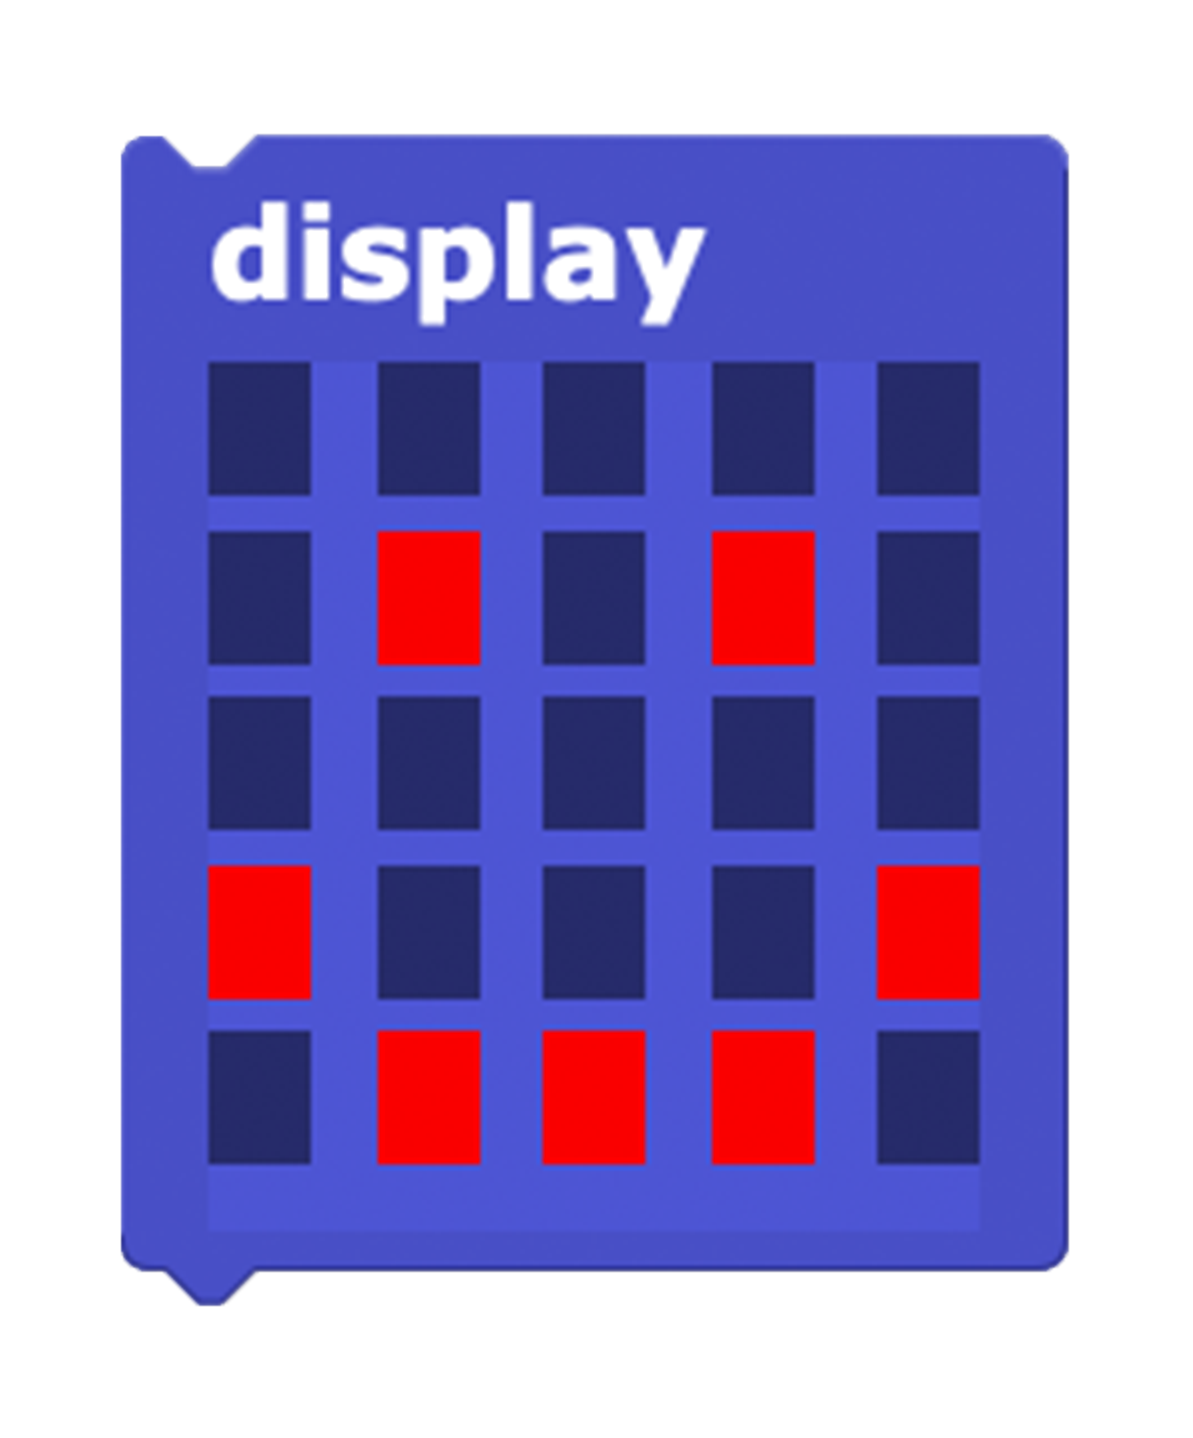 display block